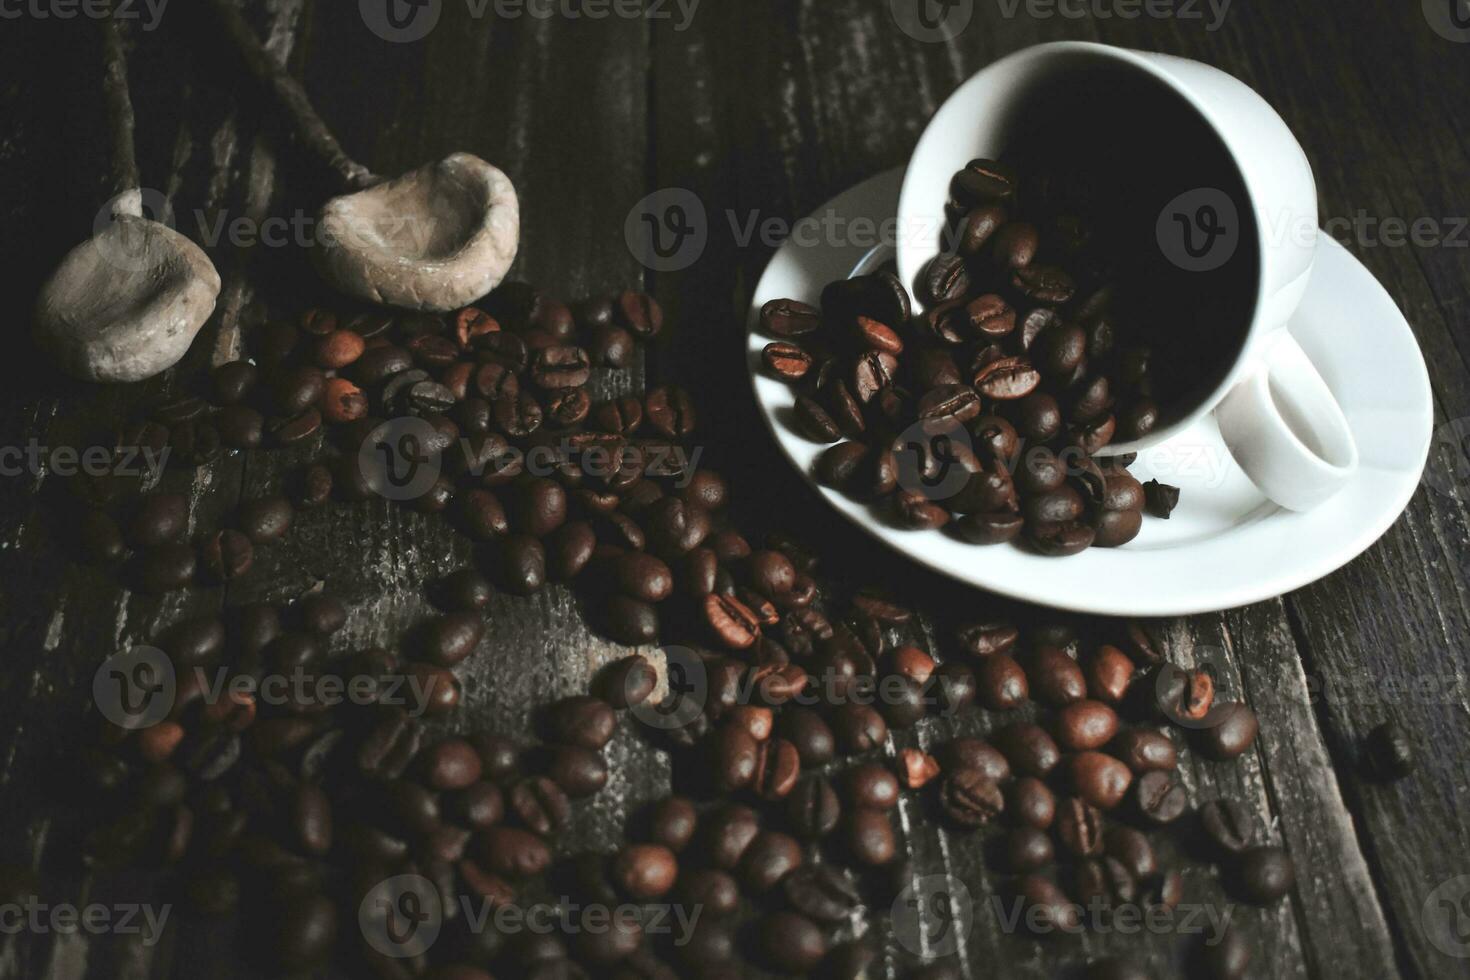 grãos de café na mesa de madeira foto